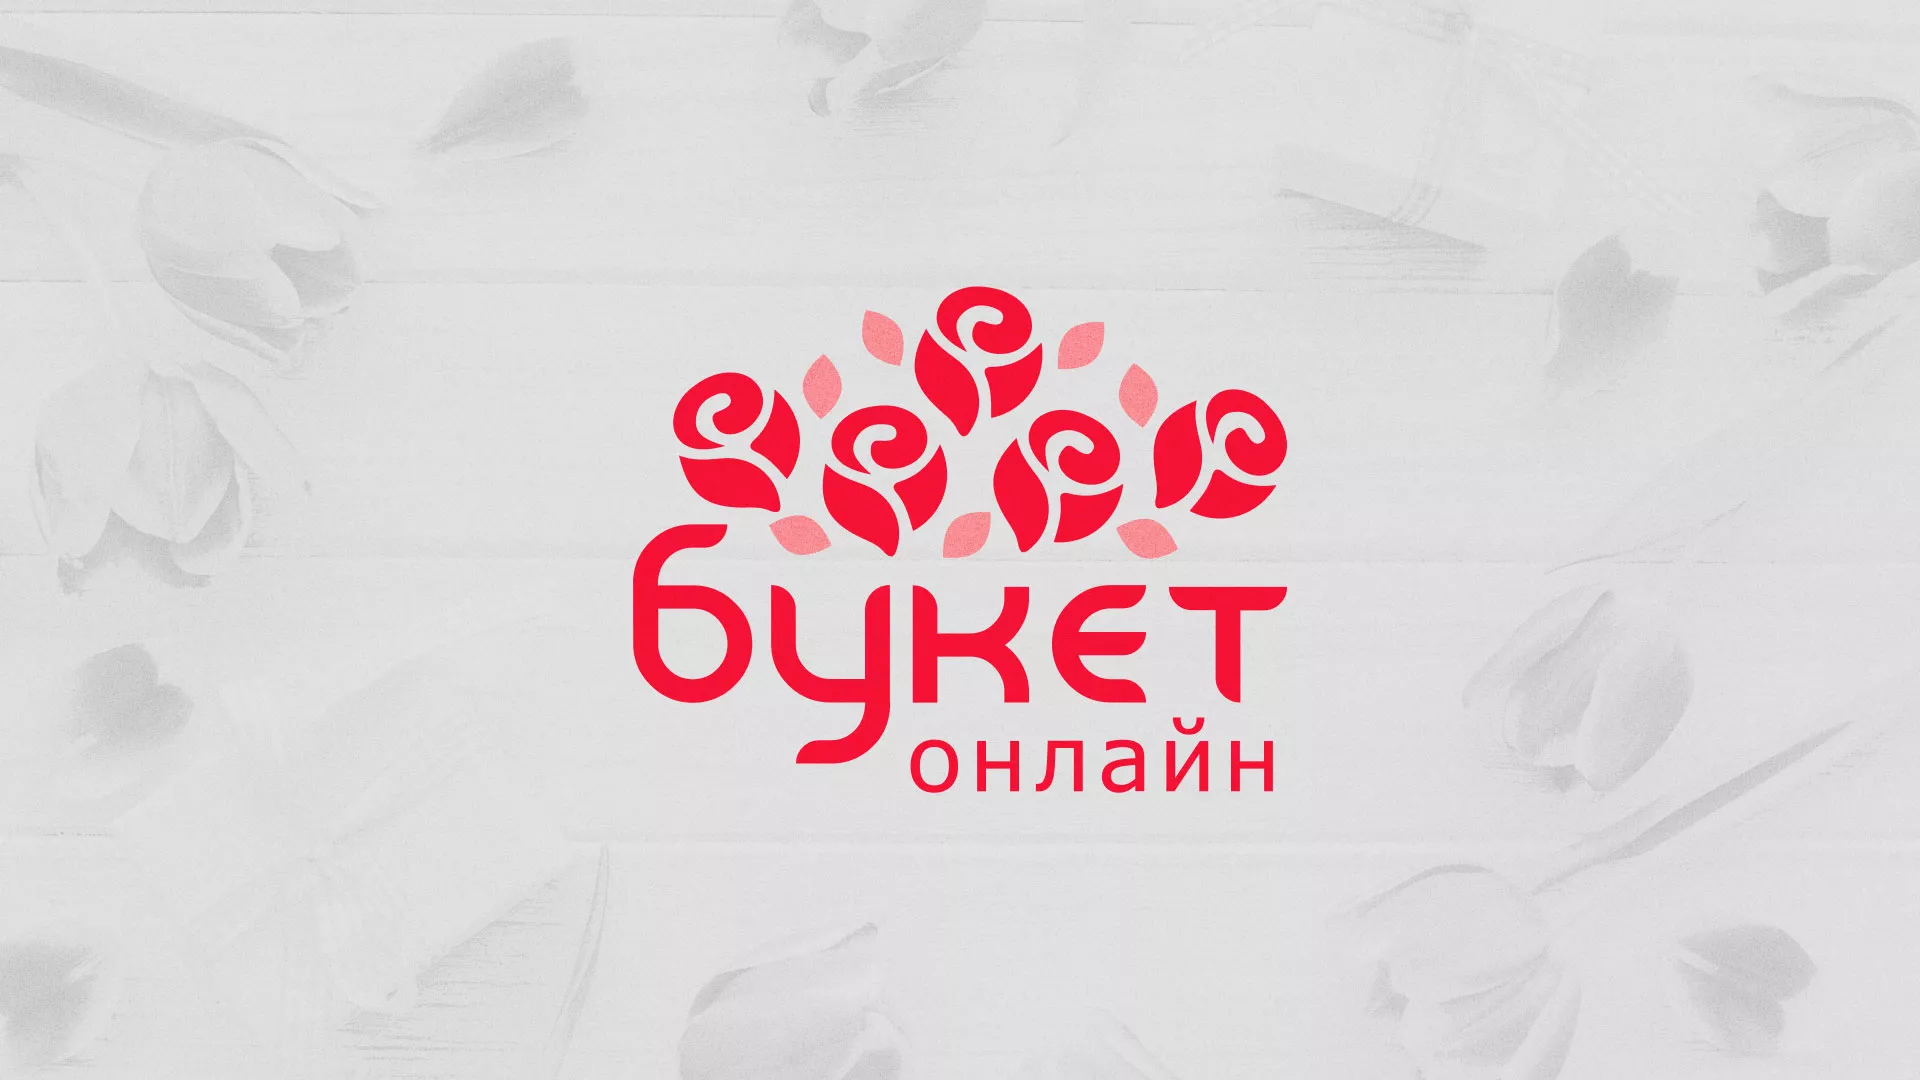 Создание интернет-магазина «Букет-онлайн» по цветам в Петушках